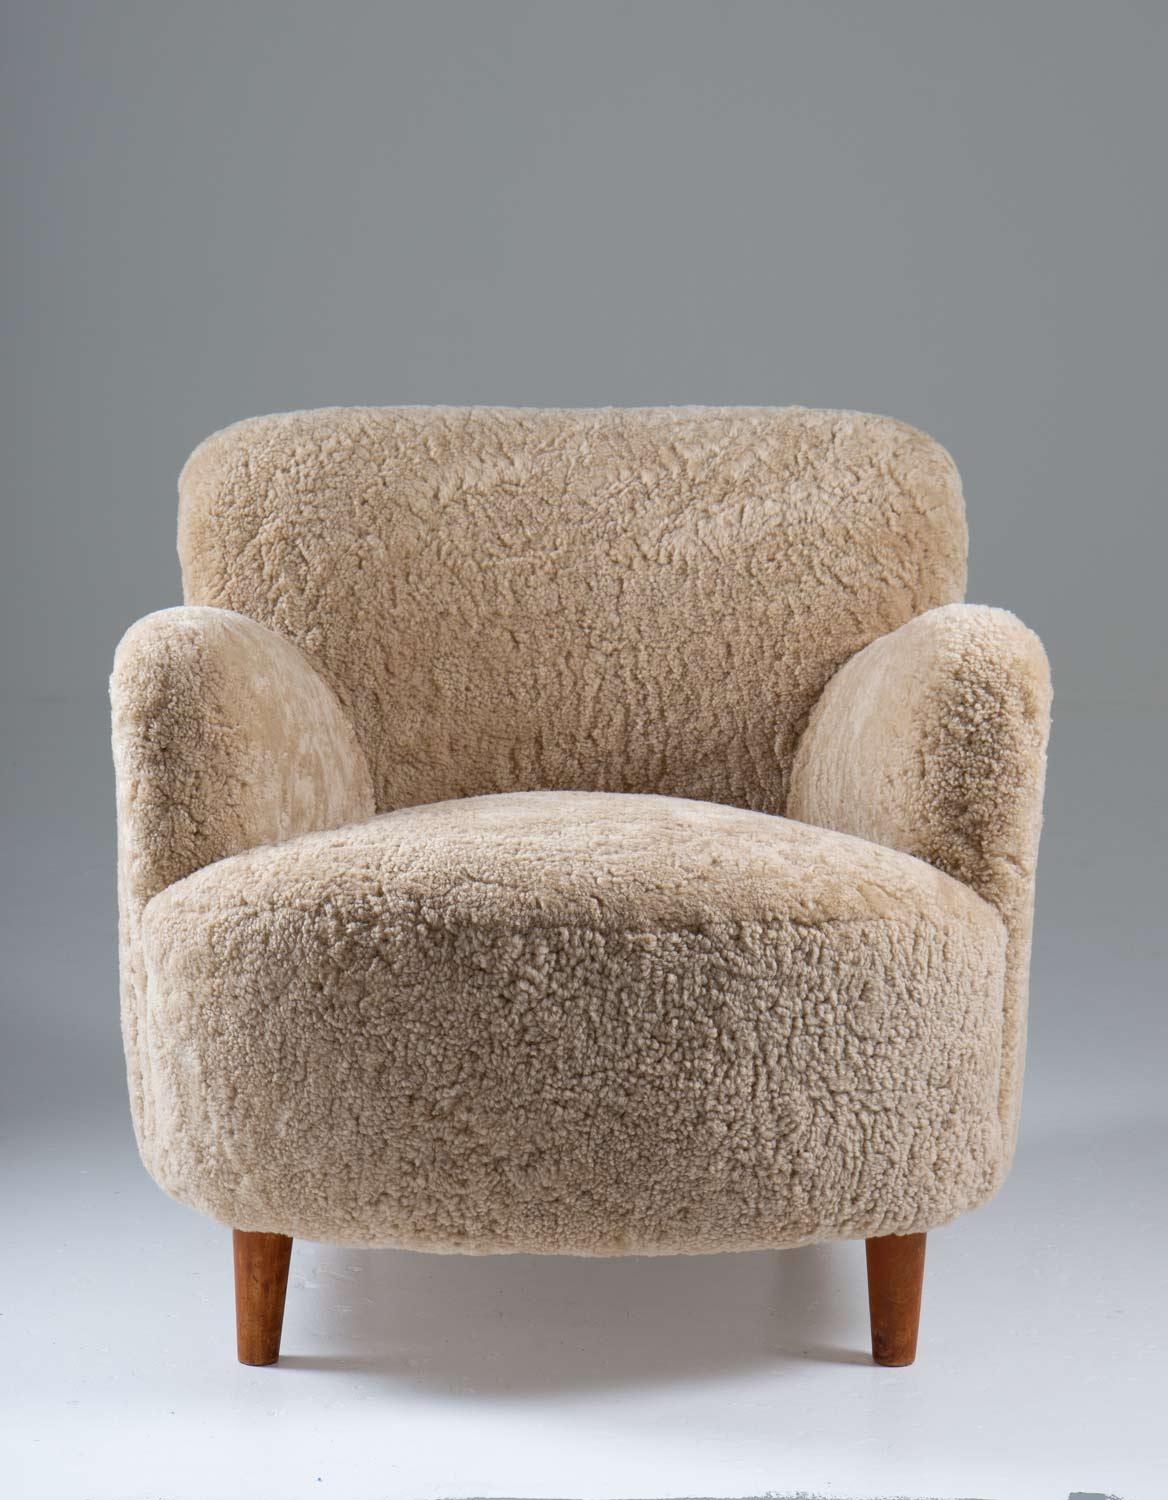 Sessel mit niedriger Rückenlehne, hergestellt in Schweden um 1940. 
Gemütliche Loungesessel mit außergewöhnlichen Proportionen und Design. 
Sie wurden mit elfenbeinfarbenem Schafsleder neu gepolstert.

Zustand: Ausgezeichnet, vollständig